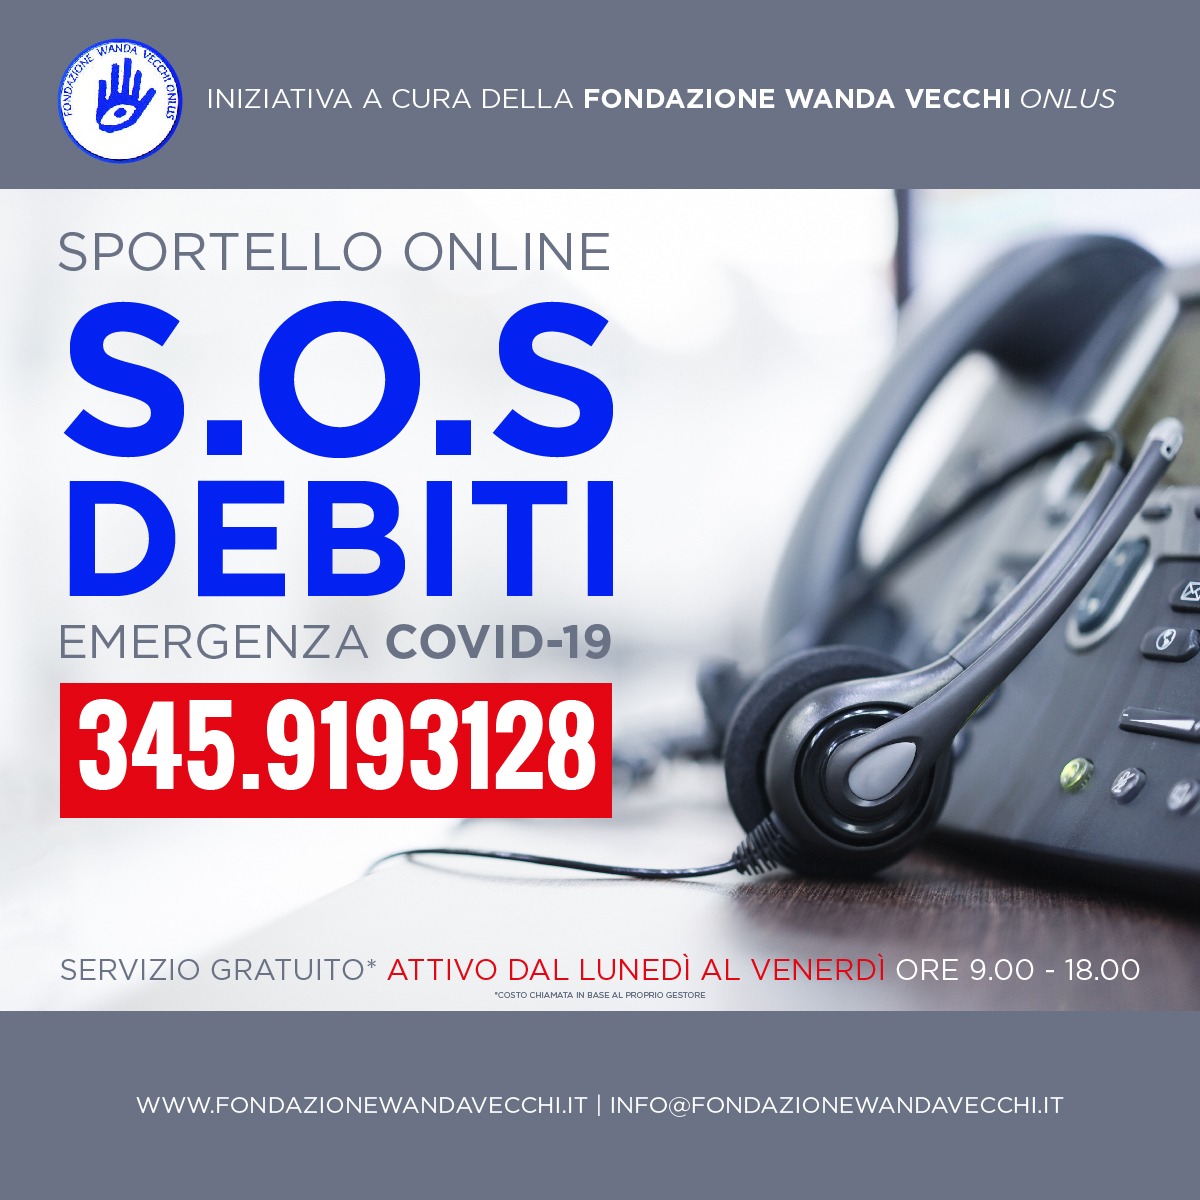 Sportello Telematico "SOS Debiti Covid-19" - Servizio della Fondazione Wanda Vecchi Onlus